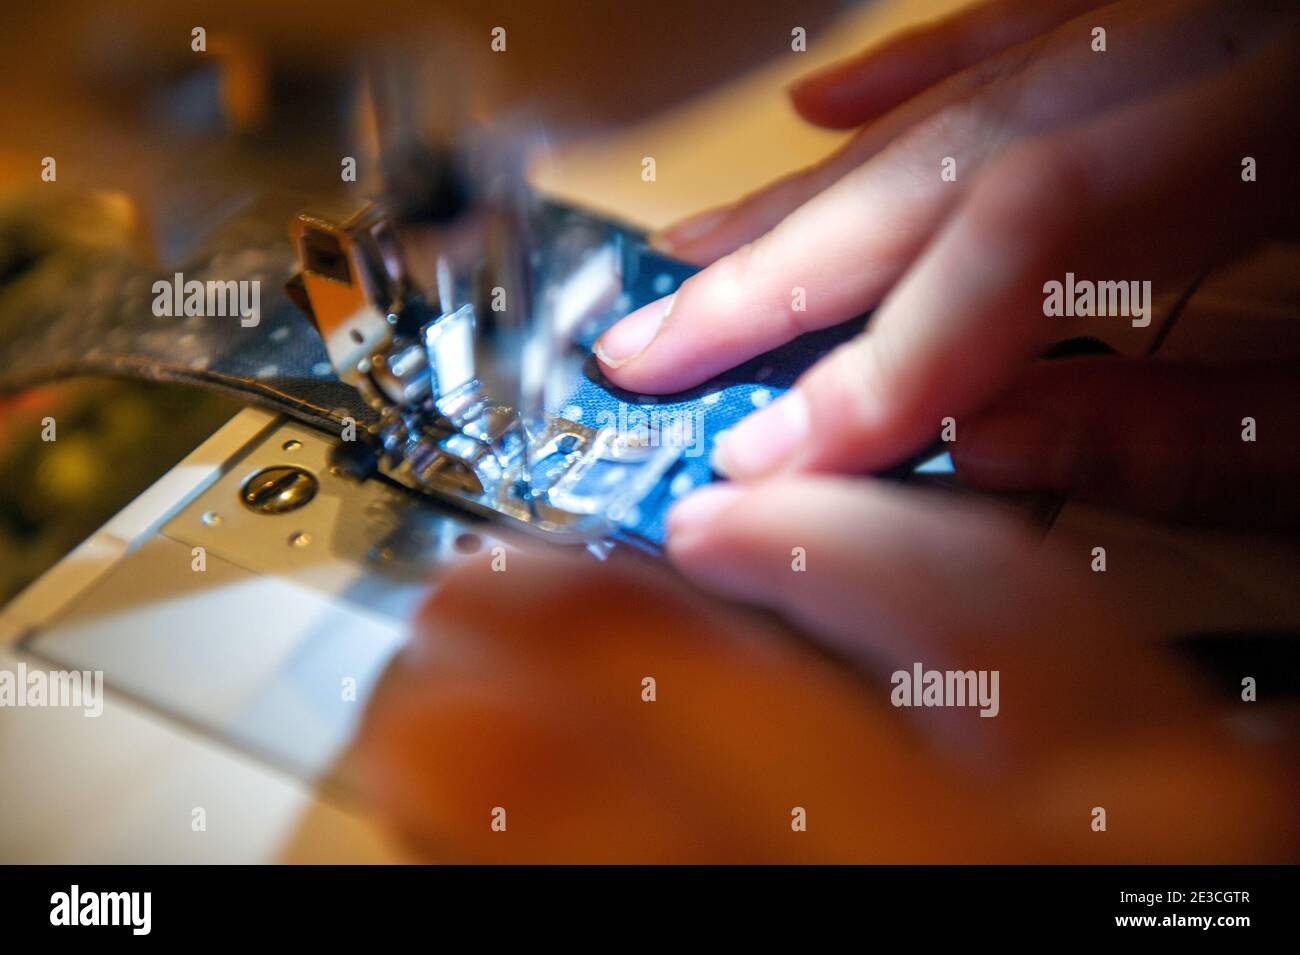 Primer plano de una niña usando una máquina de coser Foto de stock